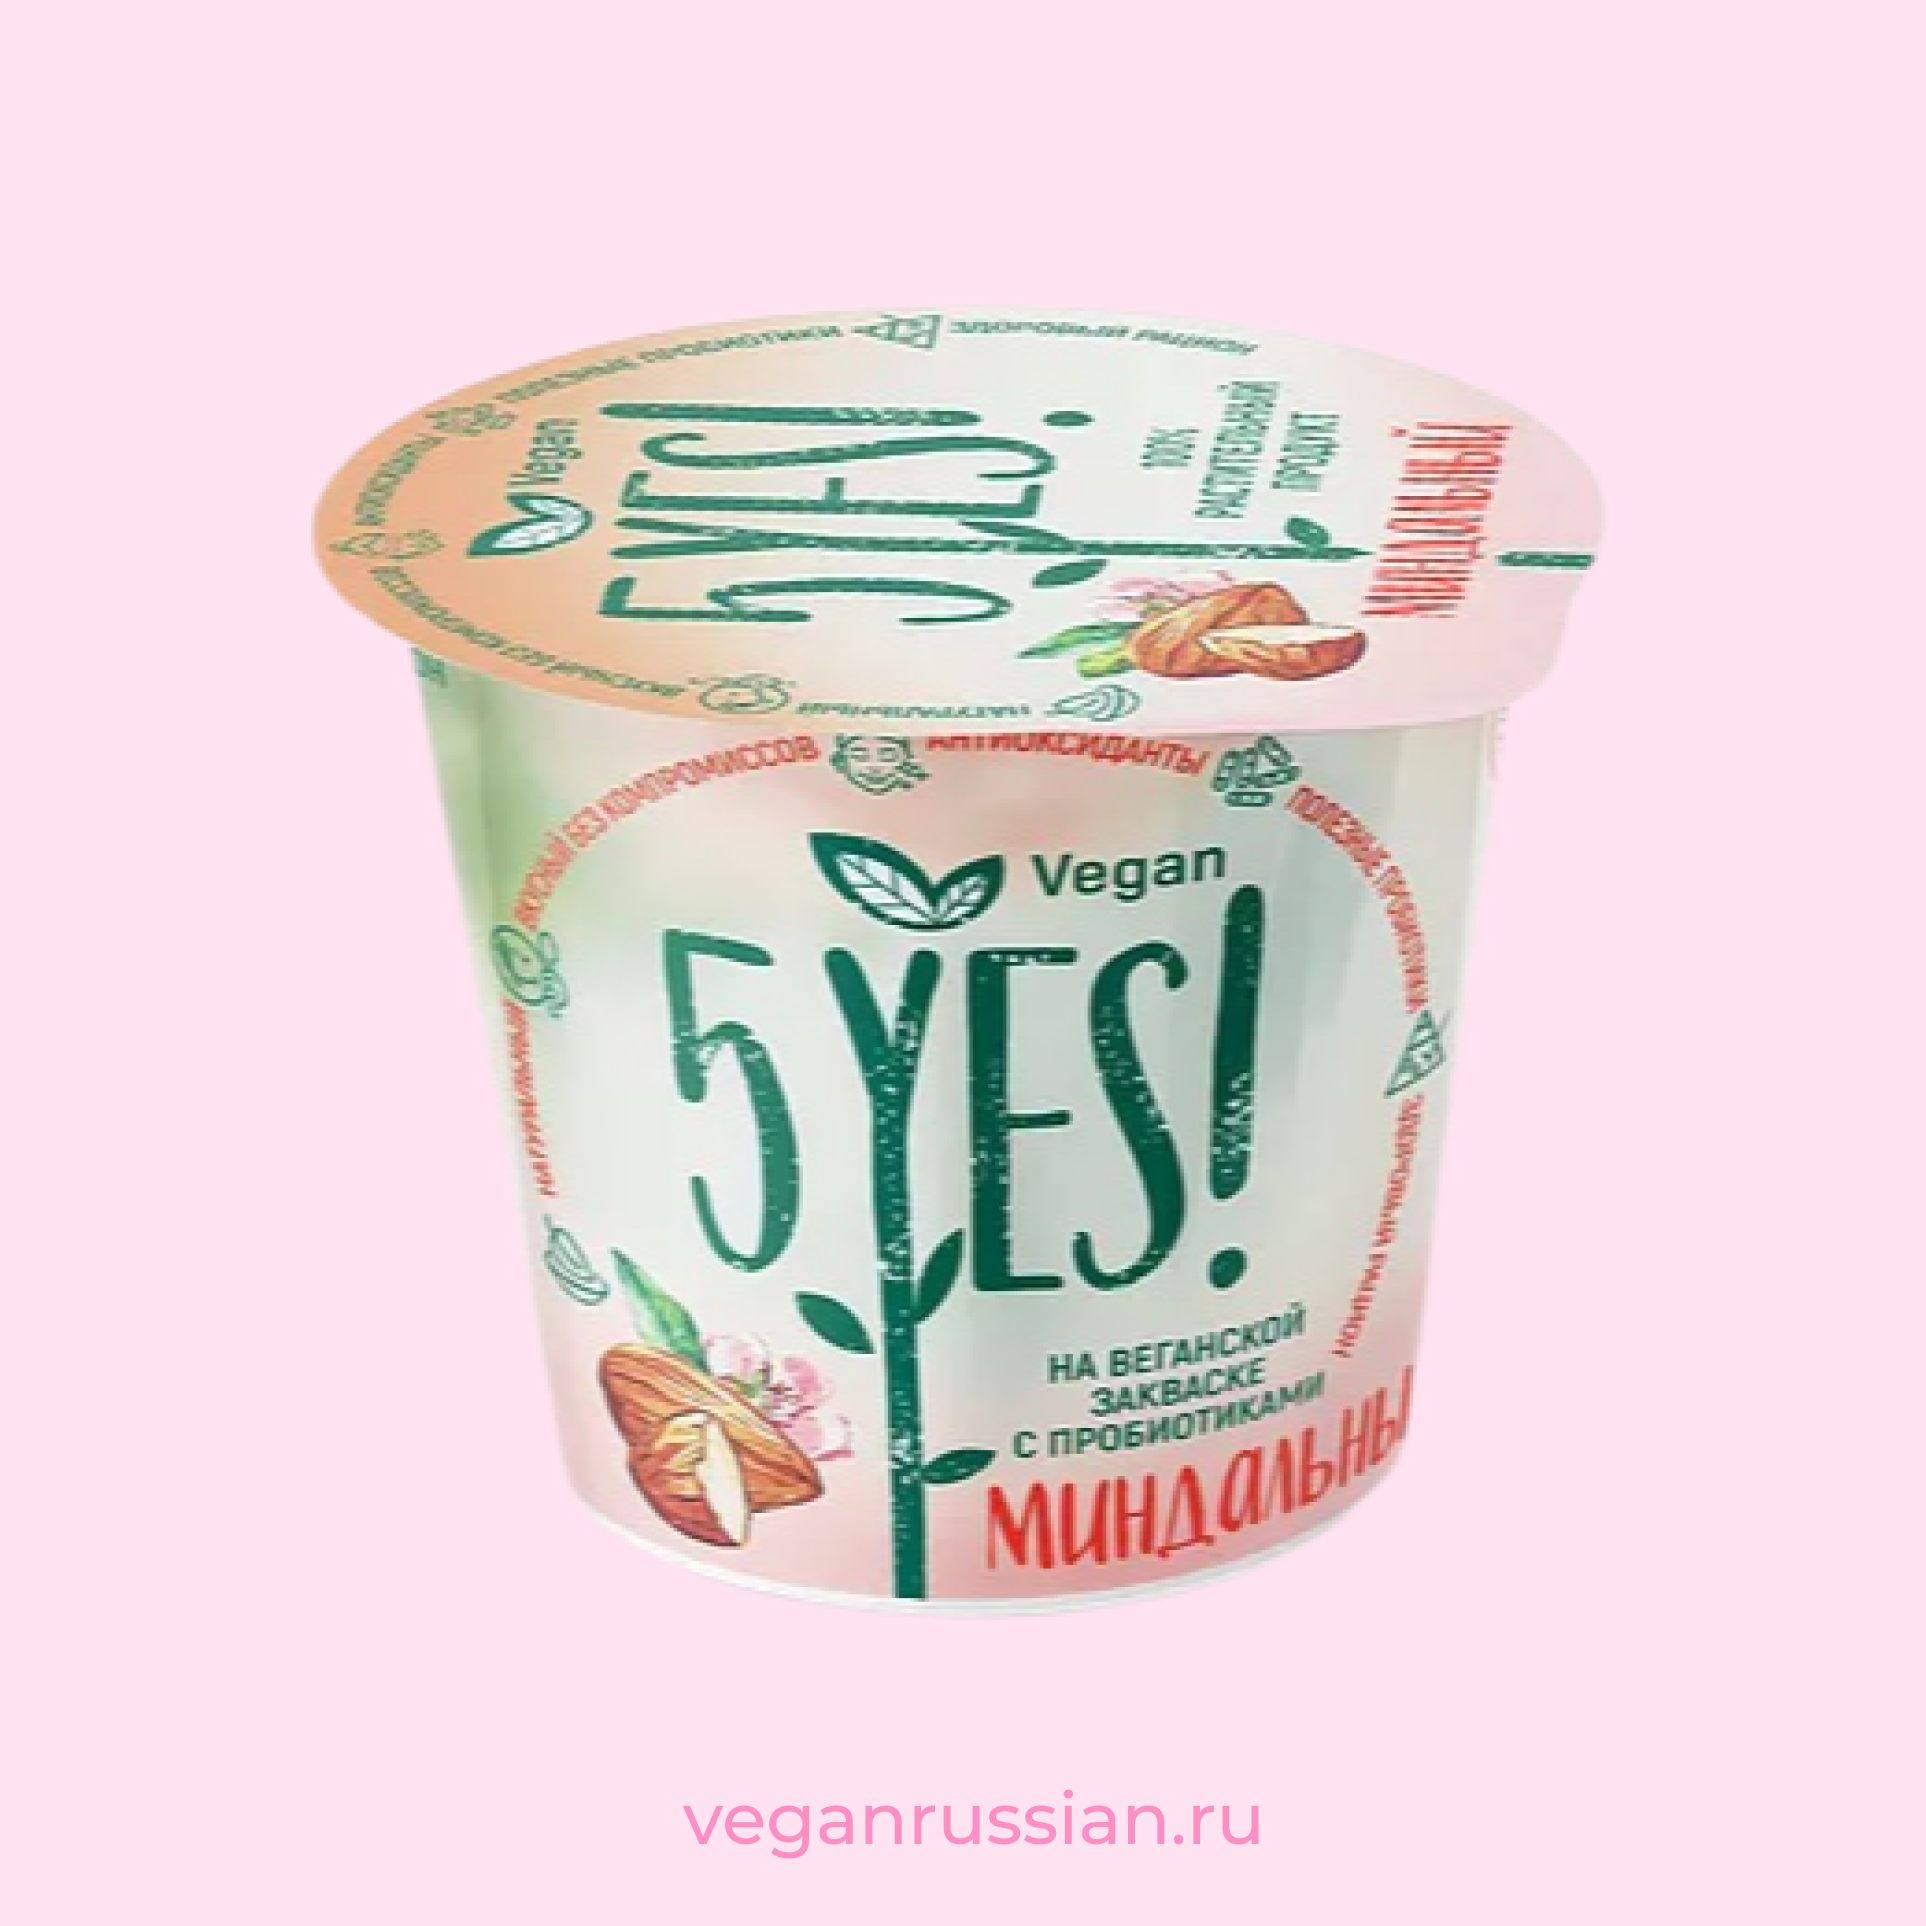 Растительный йогурт миндальный 5YES! 130 г